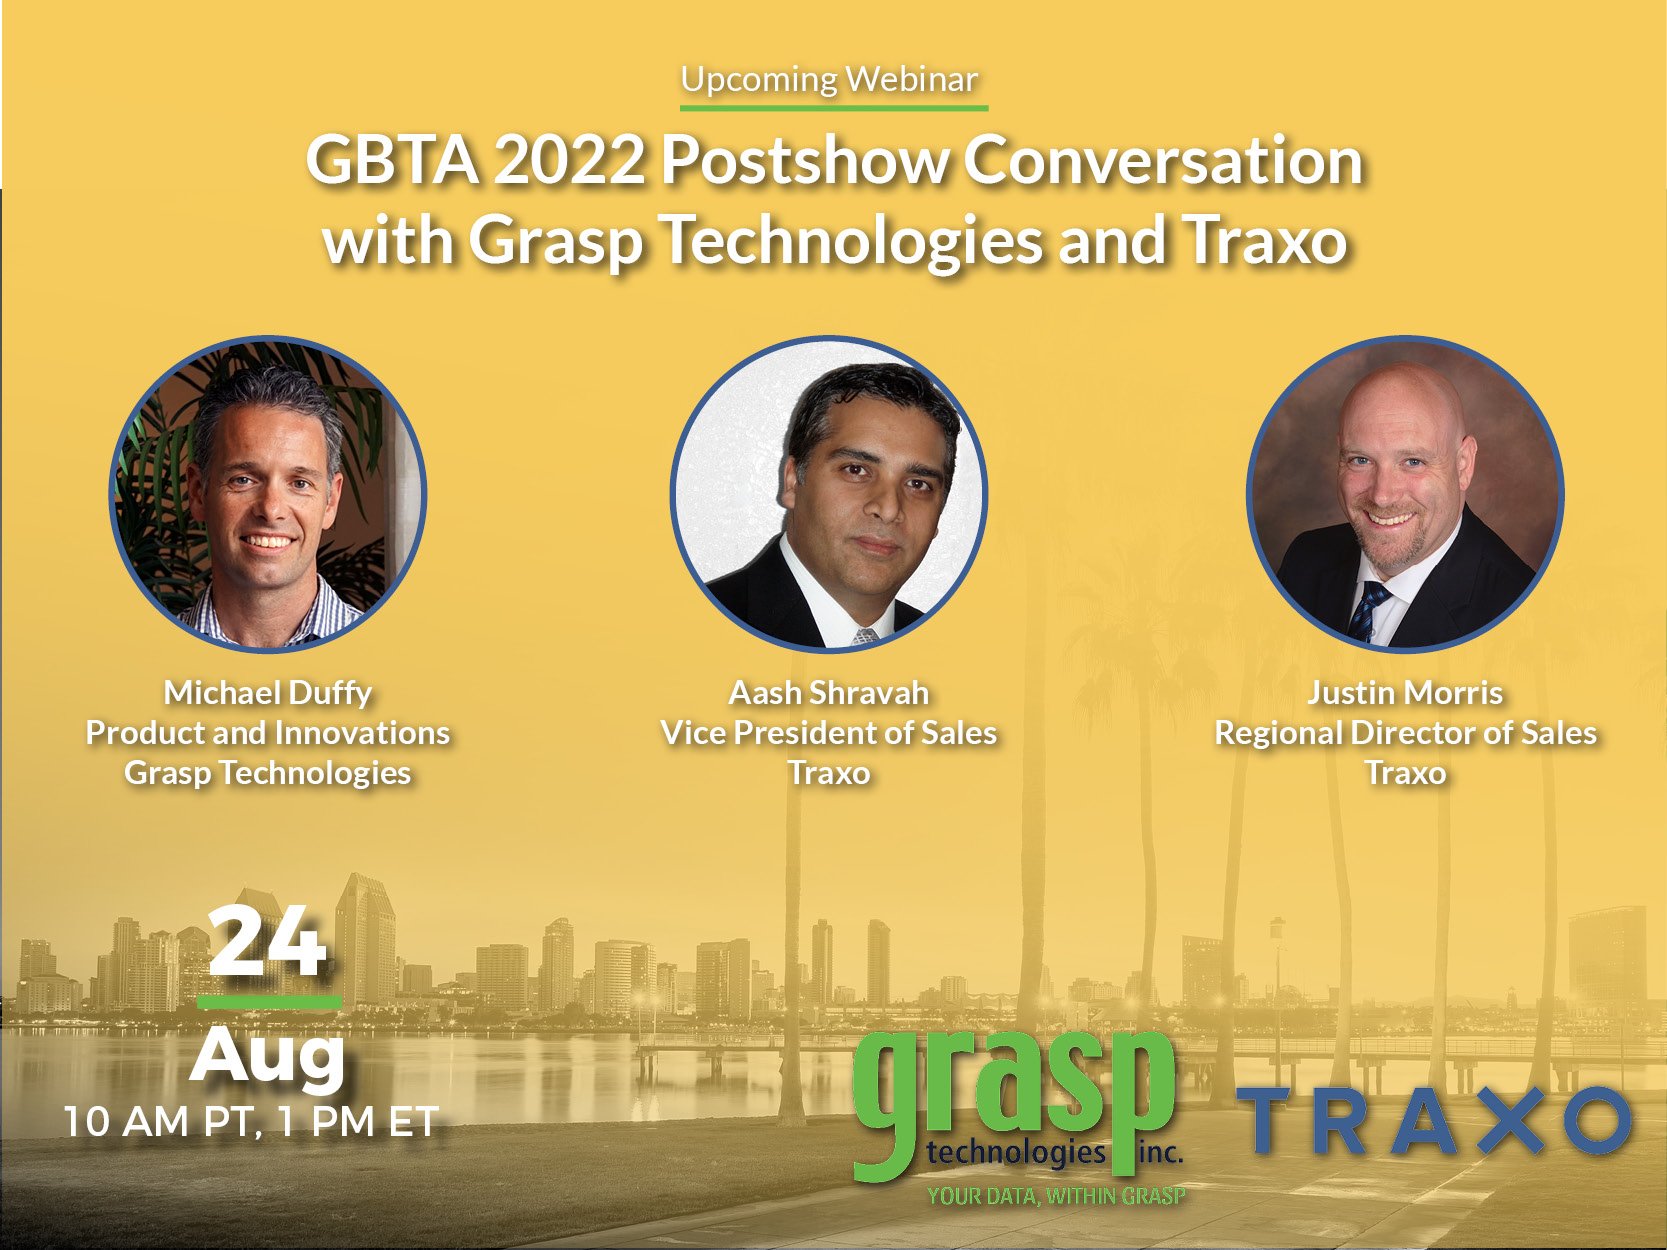 GBTA 2022 Post Show Conversation